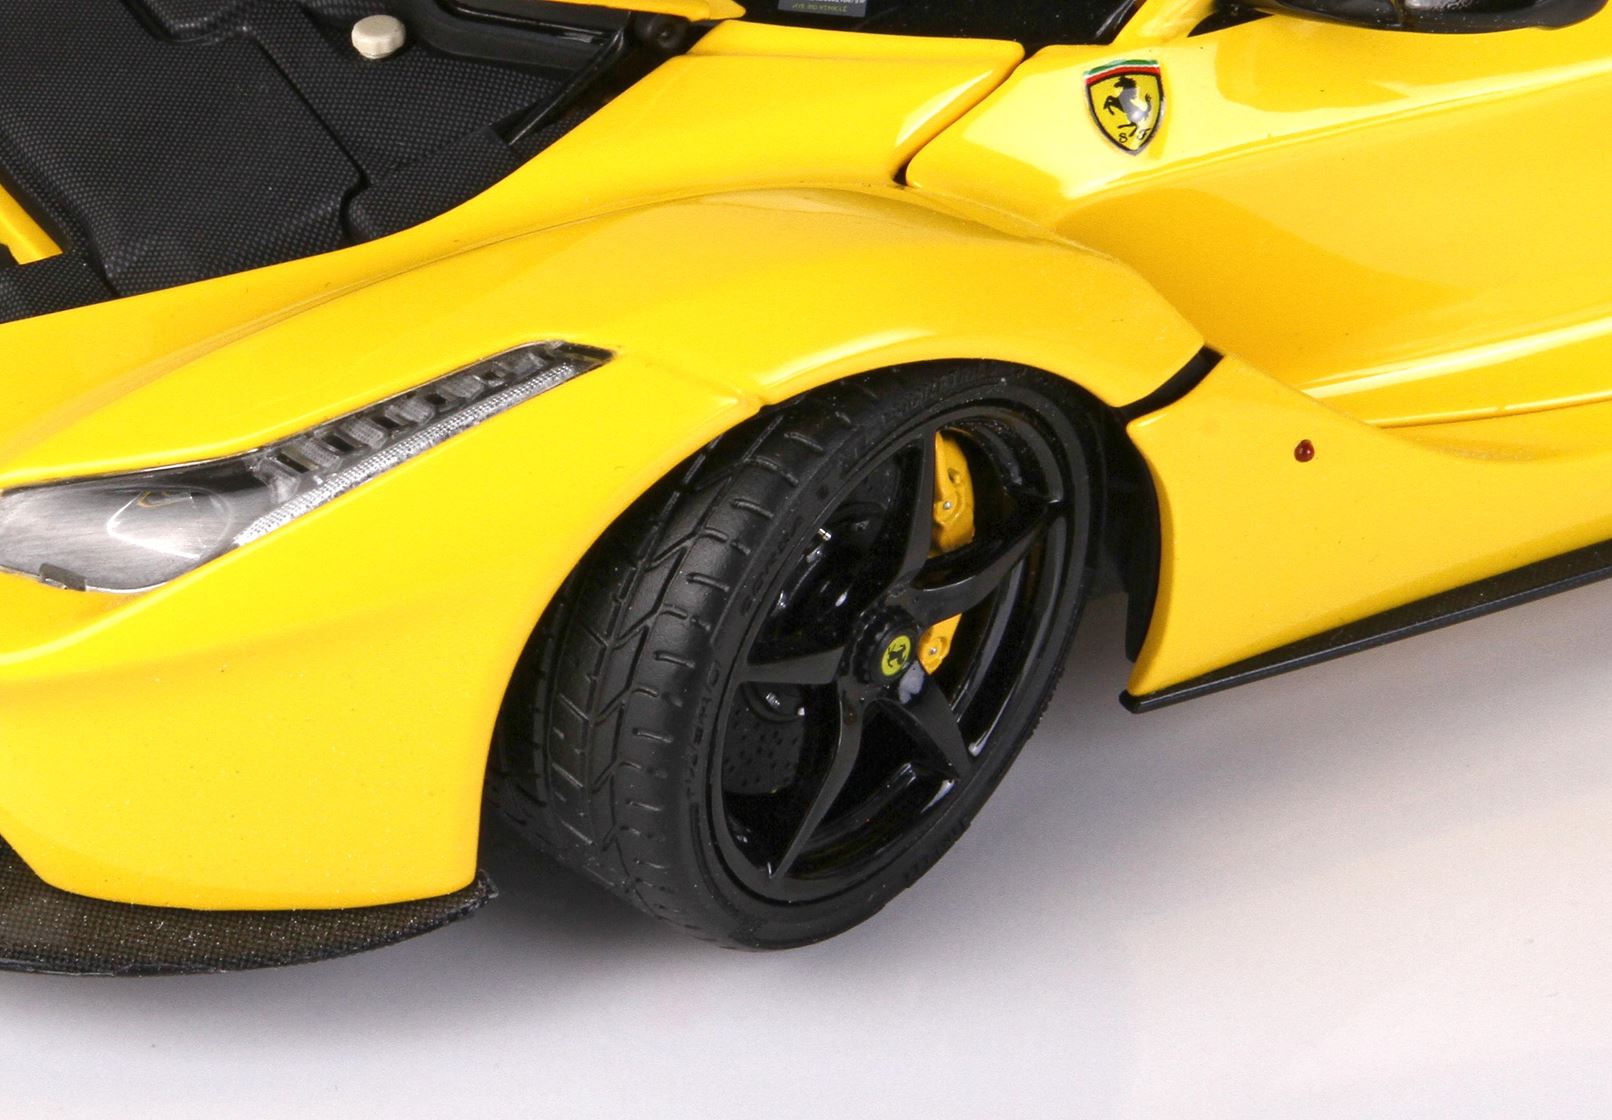 BBR La Ferrari 1:18 scale Diecast Yellow